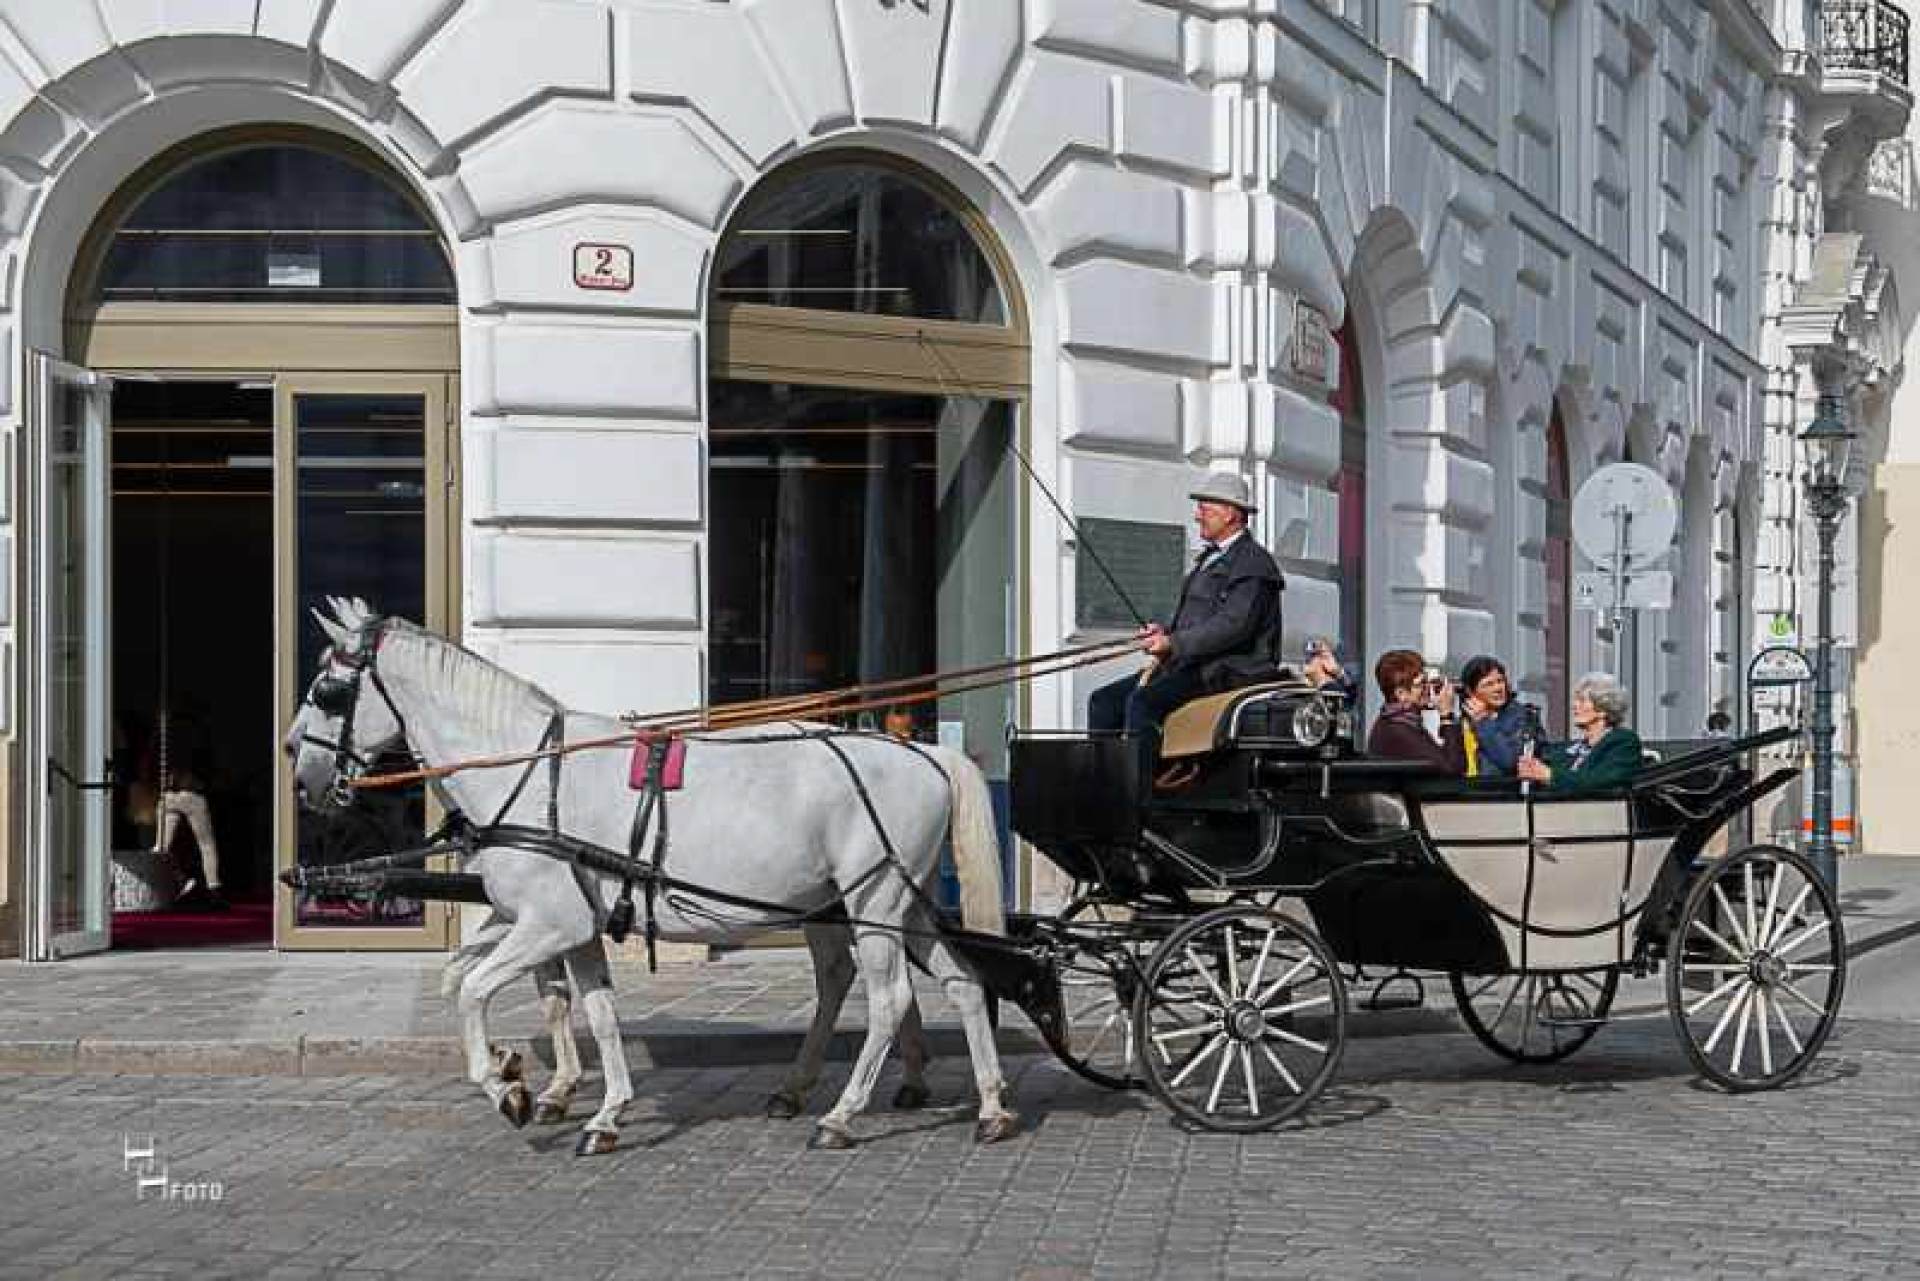 Paseo en carruaje tirado por caballos en Viena